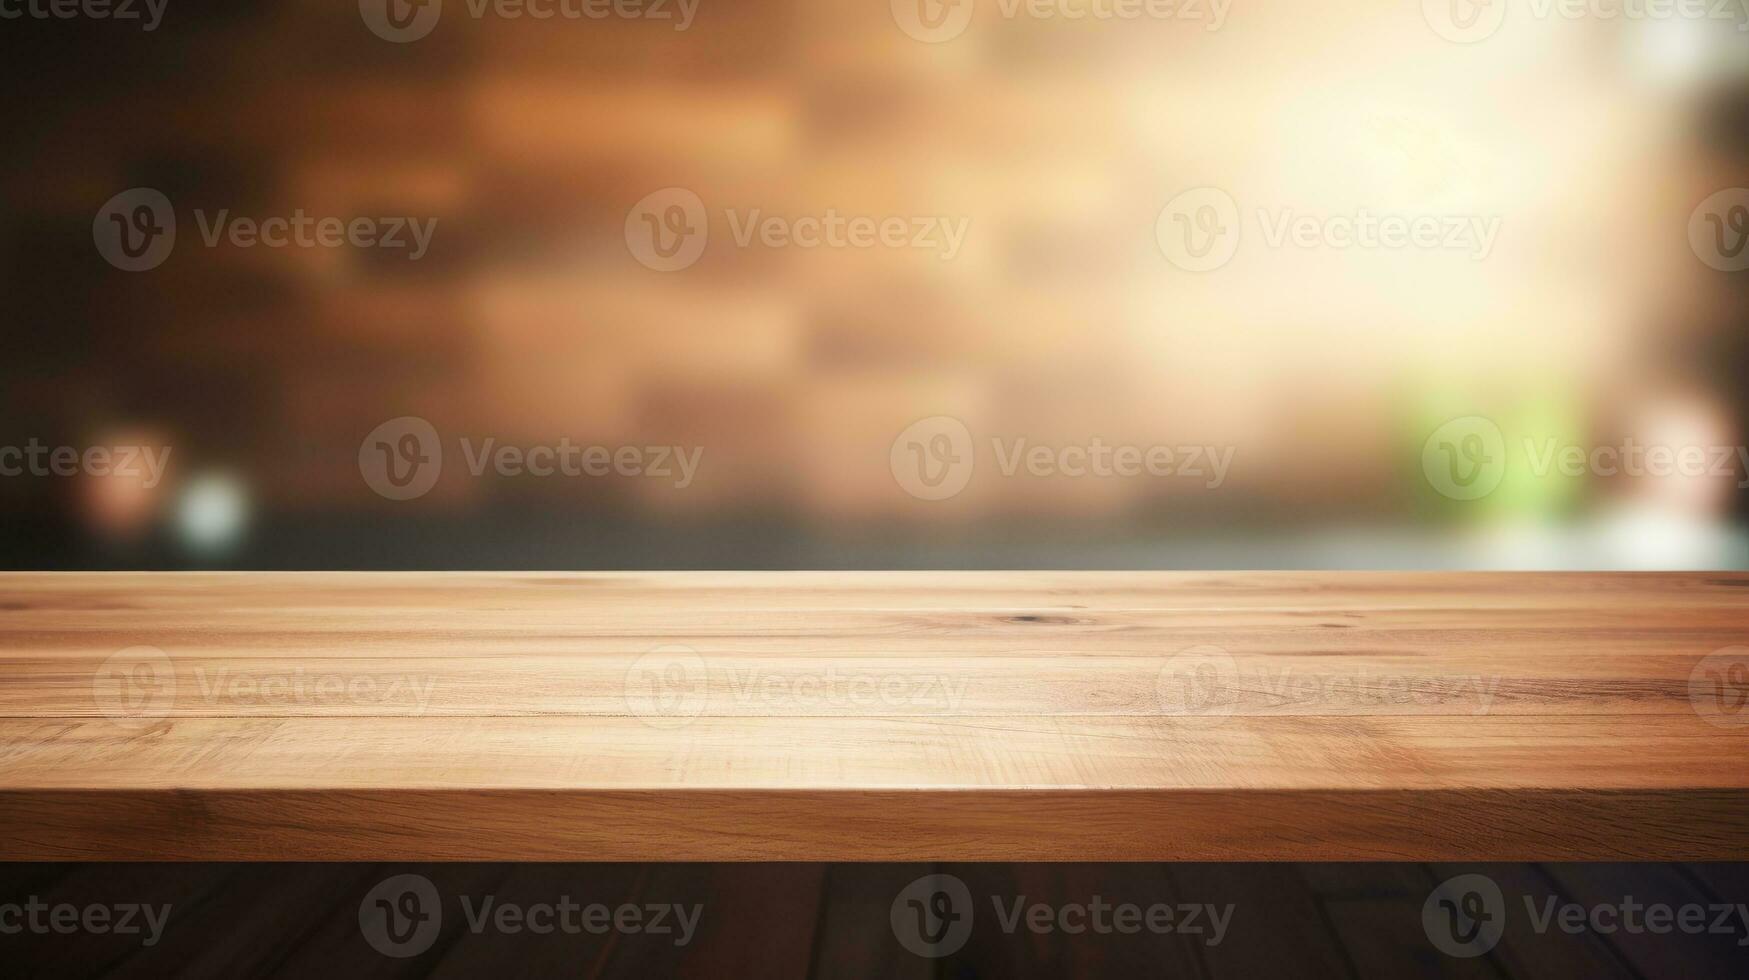 tömma trä- tabell golv, trä- tabell för produkt, foto